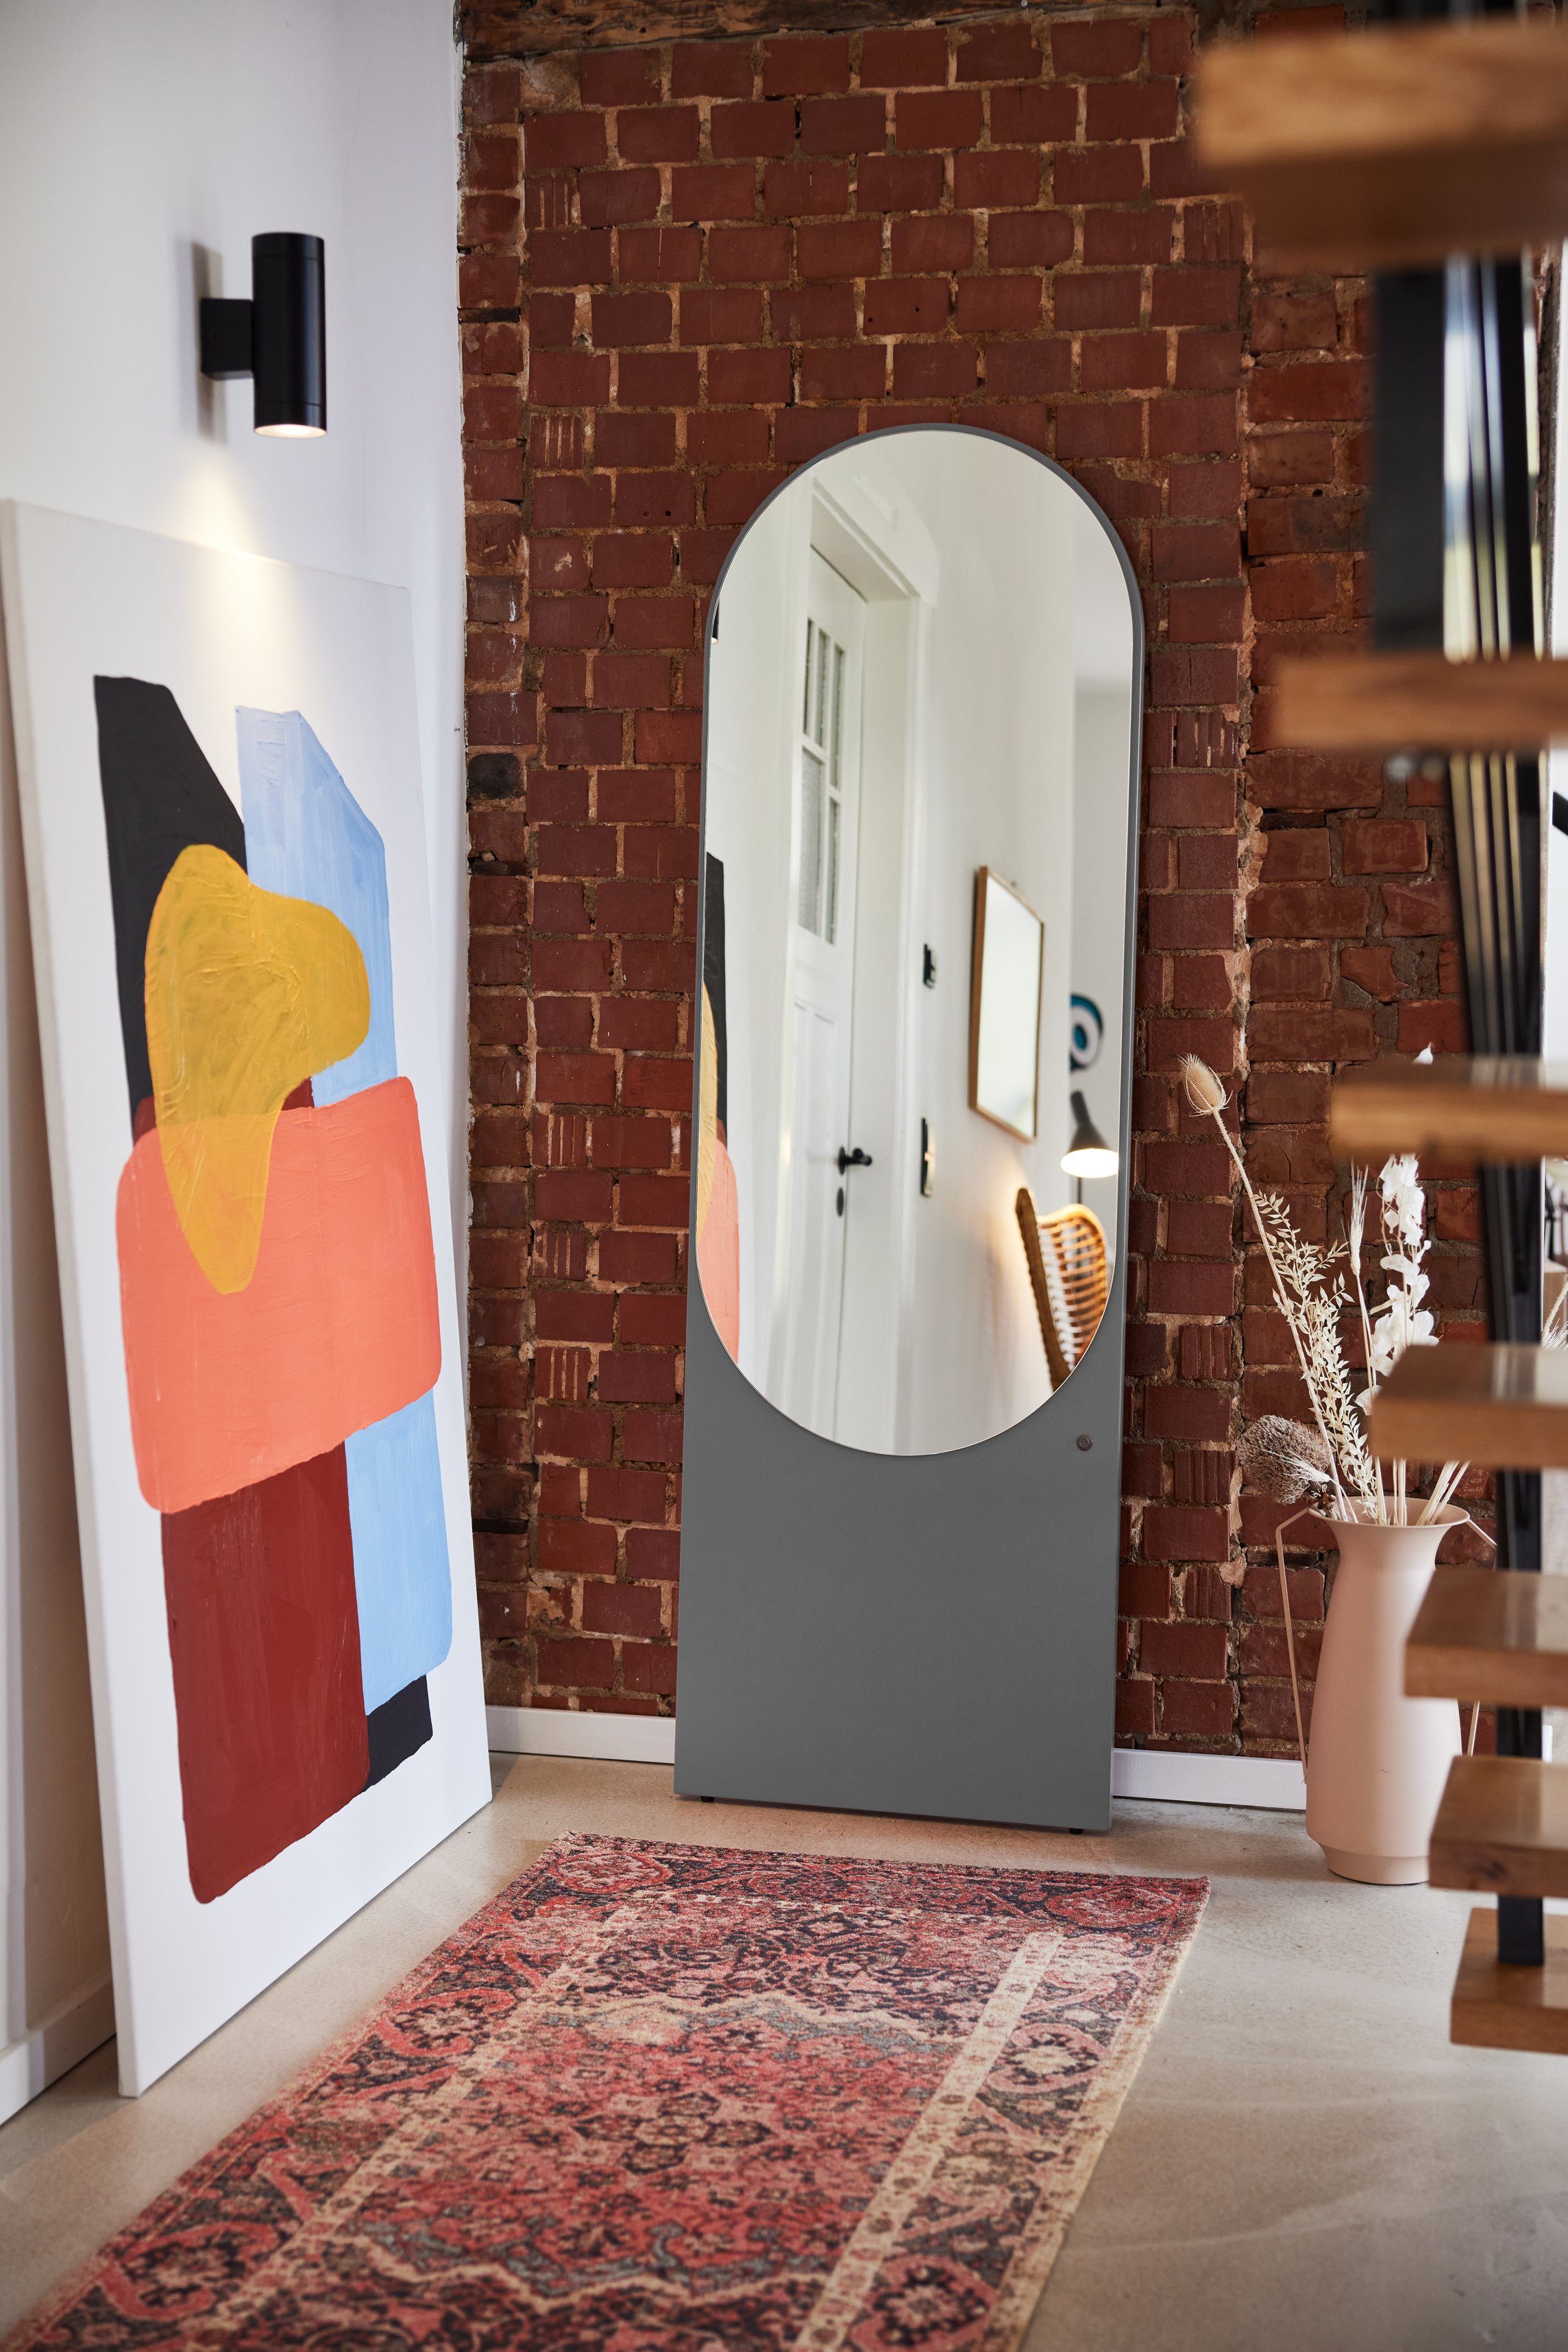 TOM TAILOR HOME besonderer grey012 & vielen - Form COLOR Standspiegel farbiges MIRROR Wandlehnender - in Spiegel in schönen Farben hochwertig Highlight lackiert